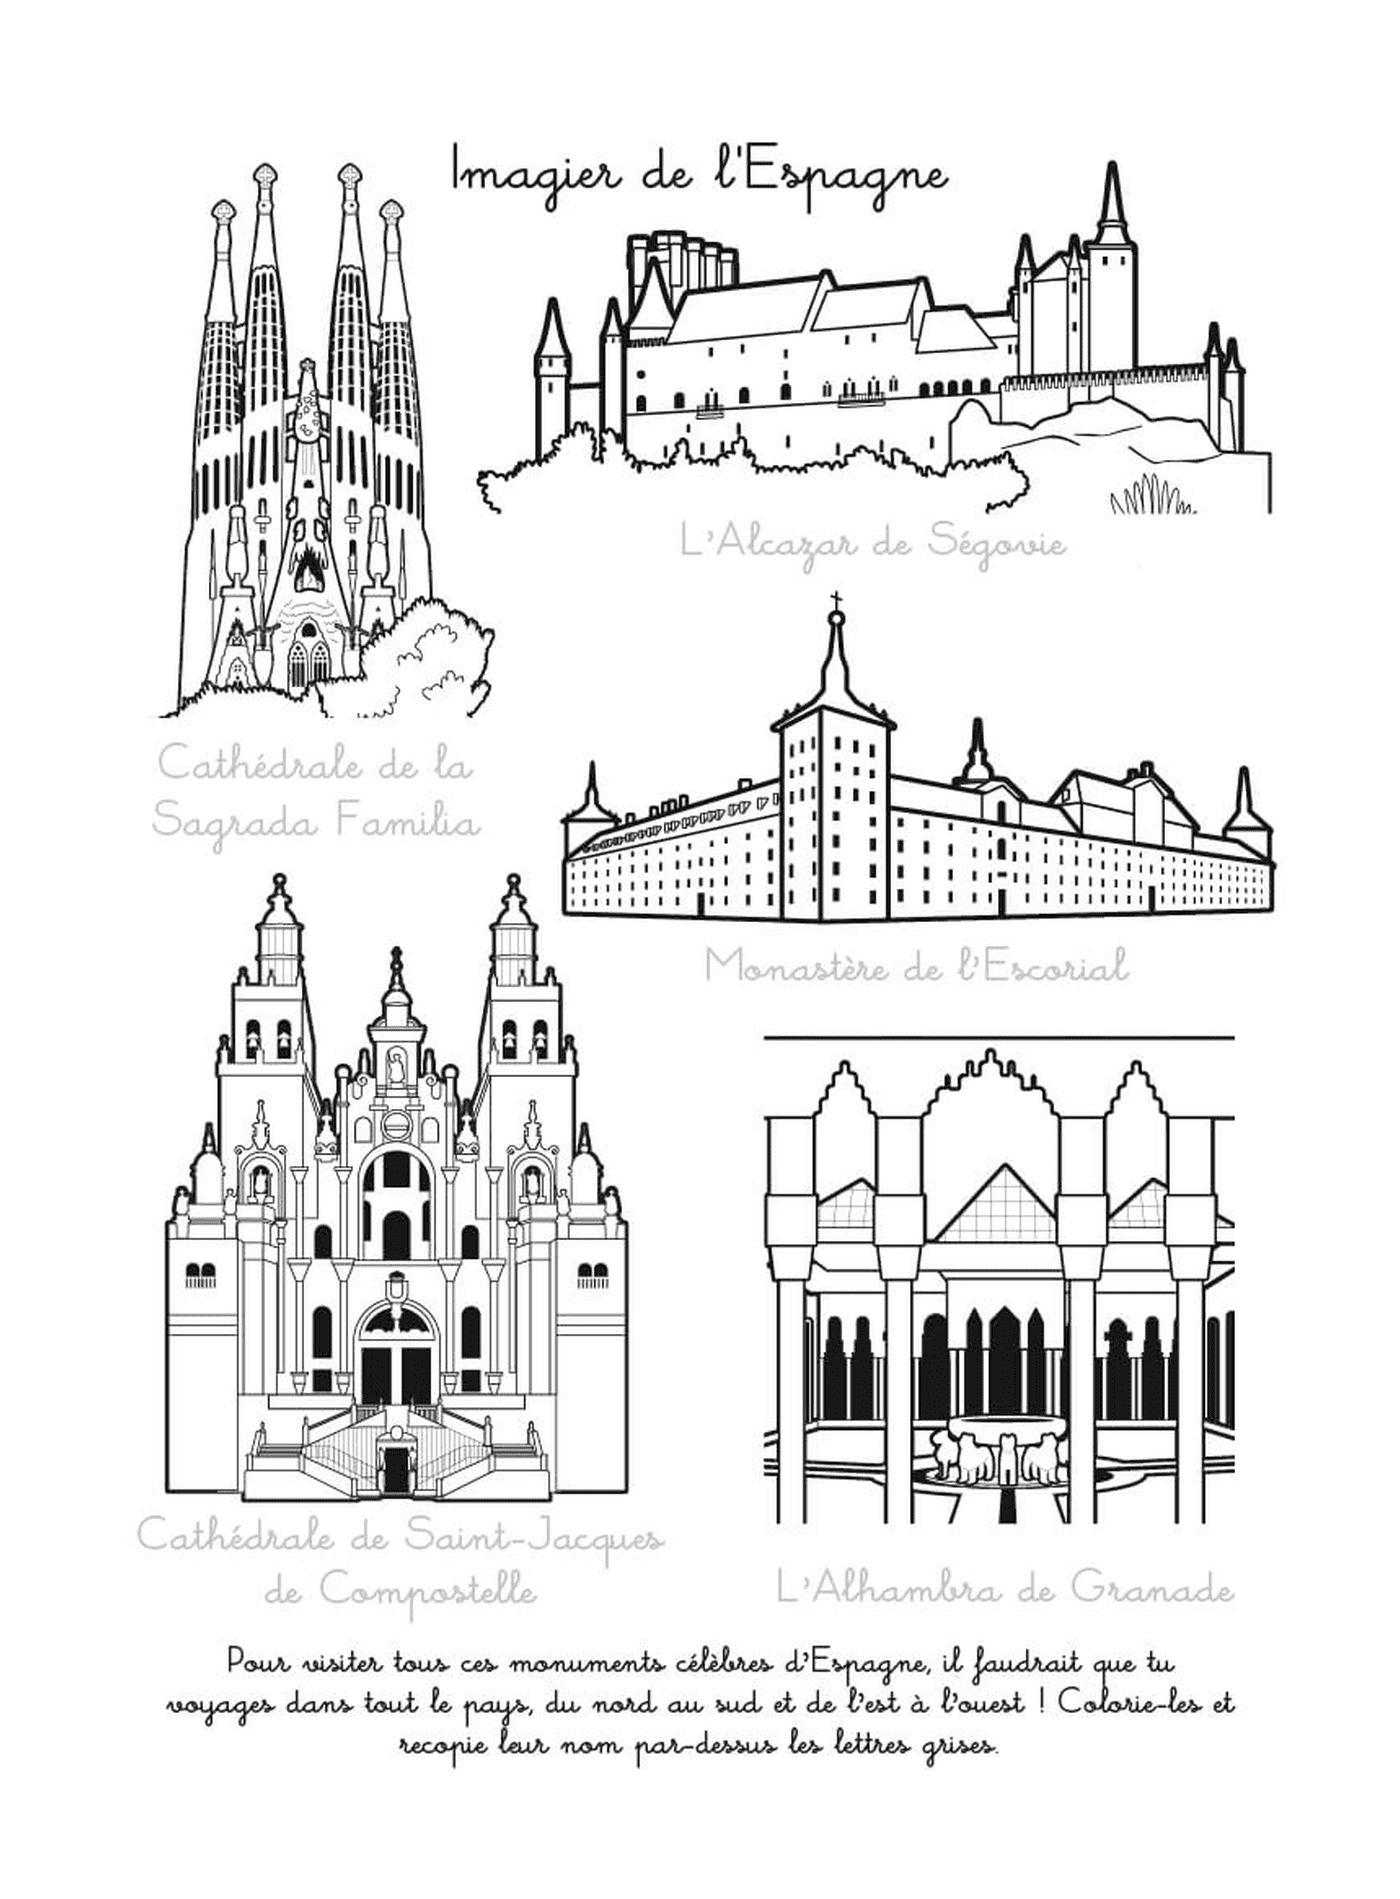   Dessins de monuments célèbres et cathédrales espagnoles 